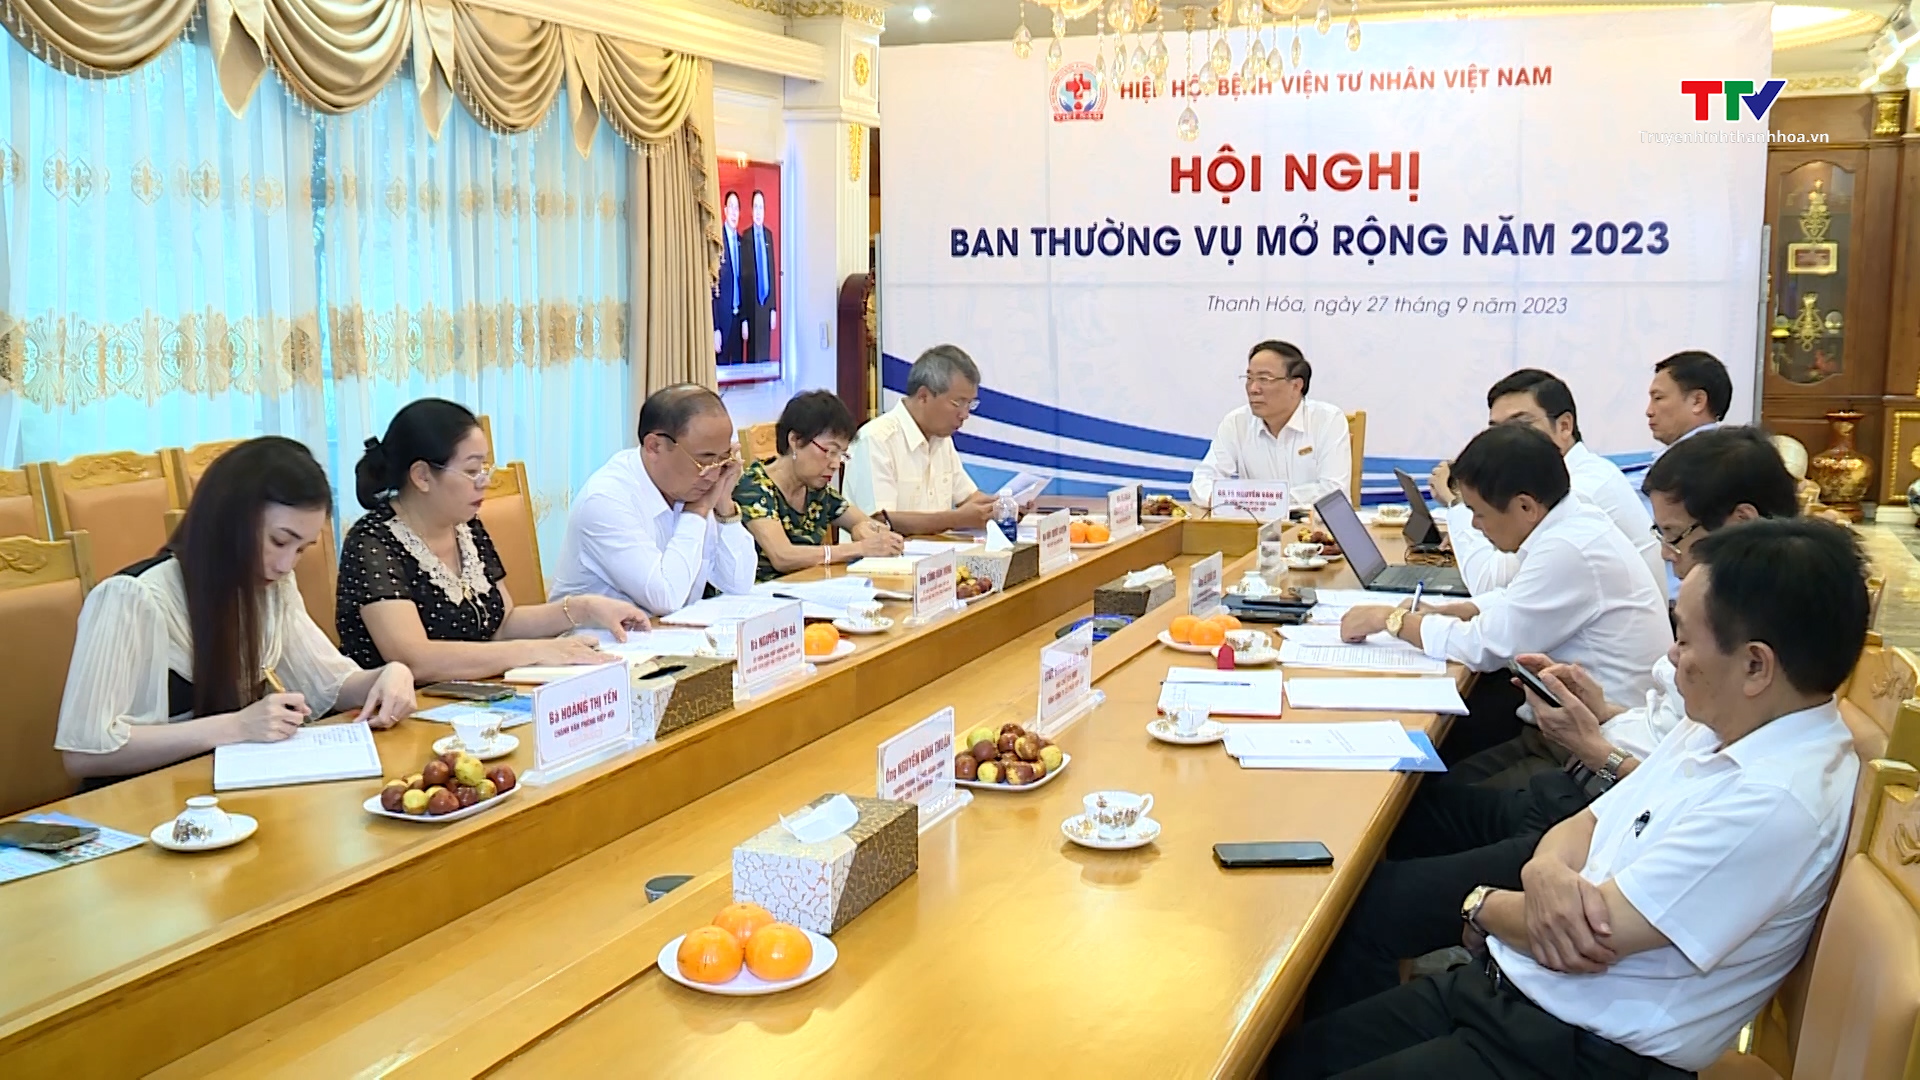 Hiệp hội Bệnh viện tư nhân Việt Nam tổ chức hội nghị ban thường vụ mở rộng năm 2023 - Ảnh 2.